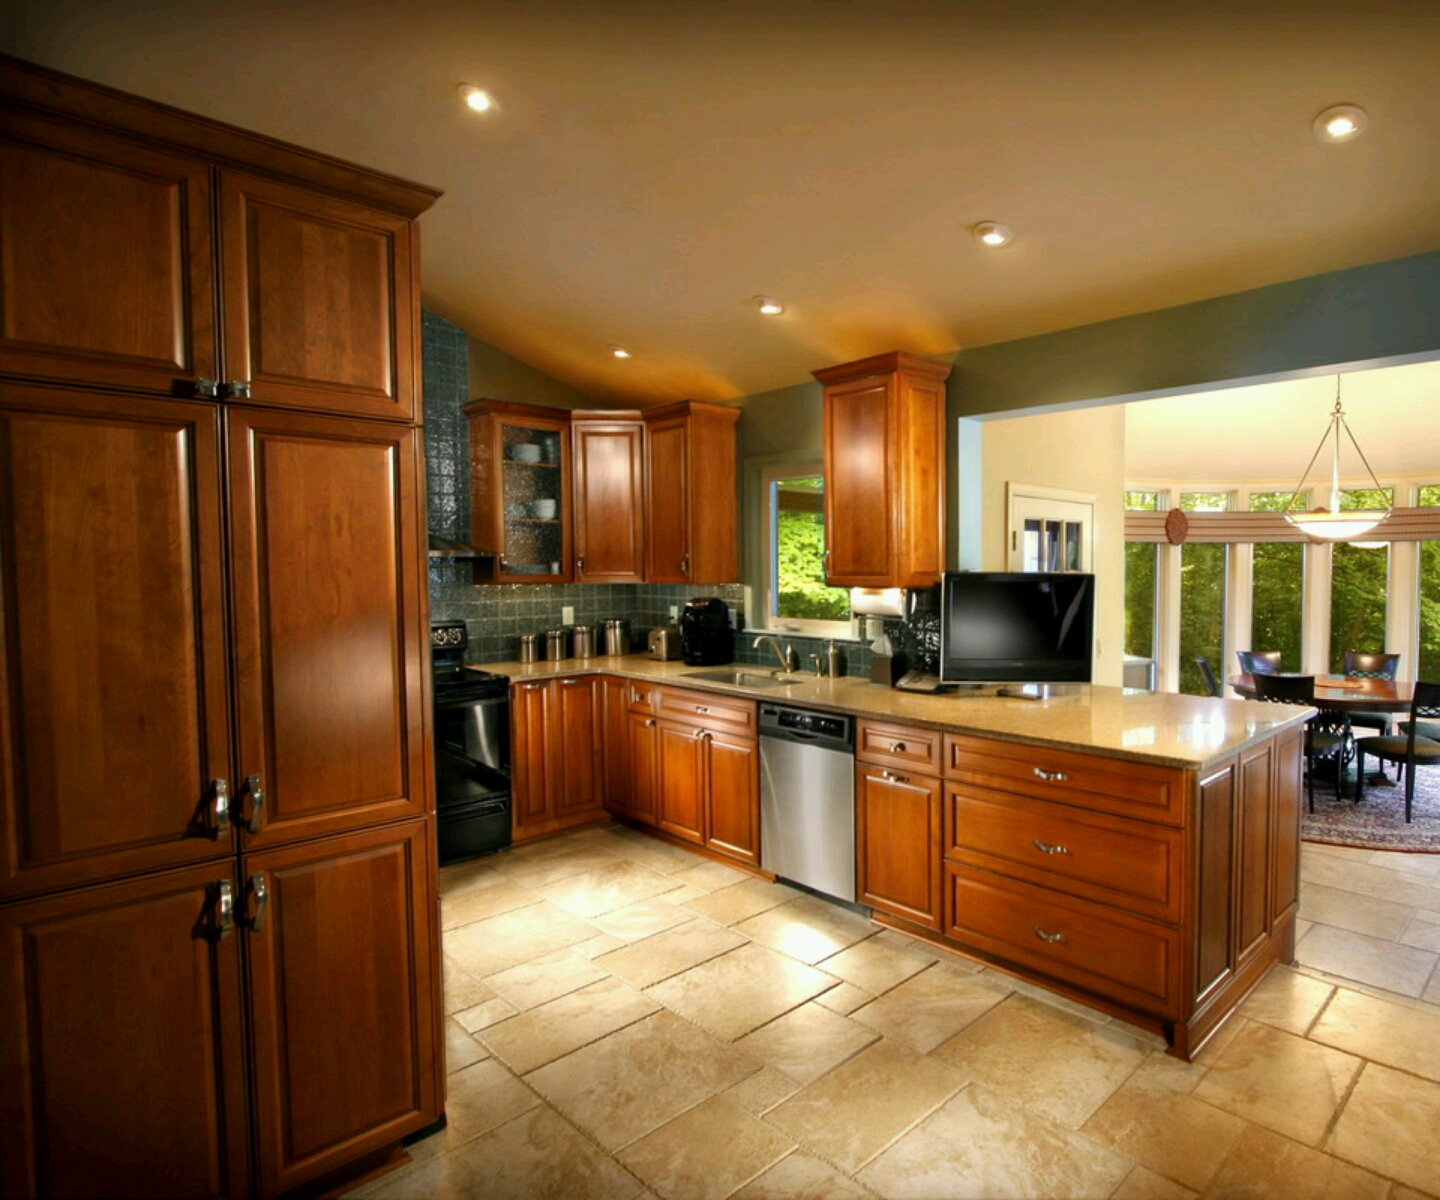 Luxury kitchen, modern kitchen cabinets designs. ~ Furniture Gallery